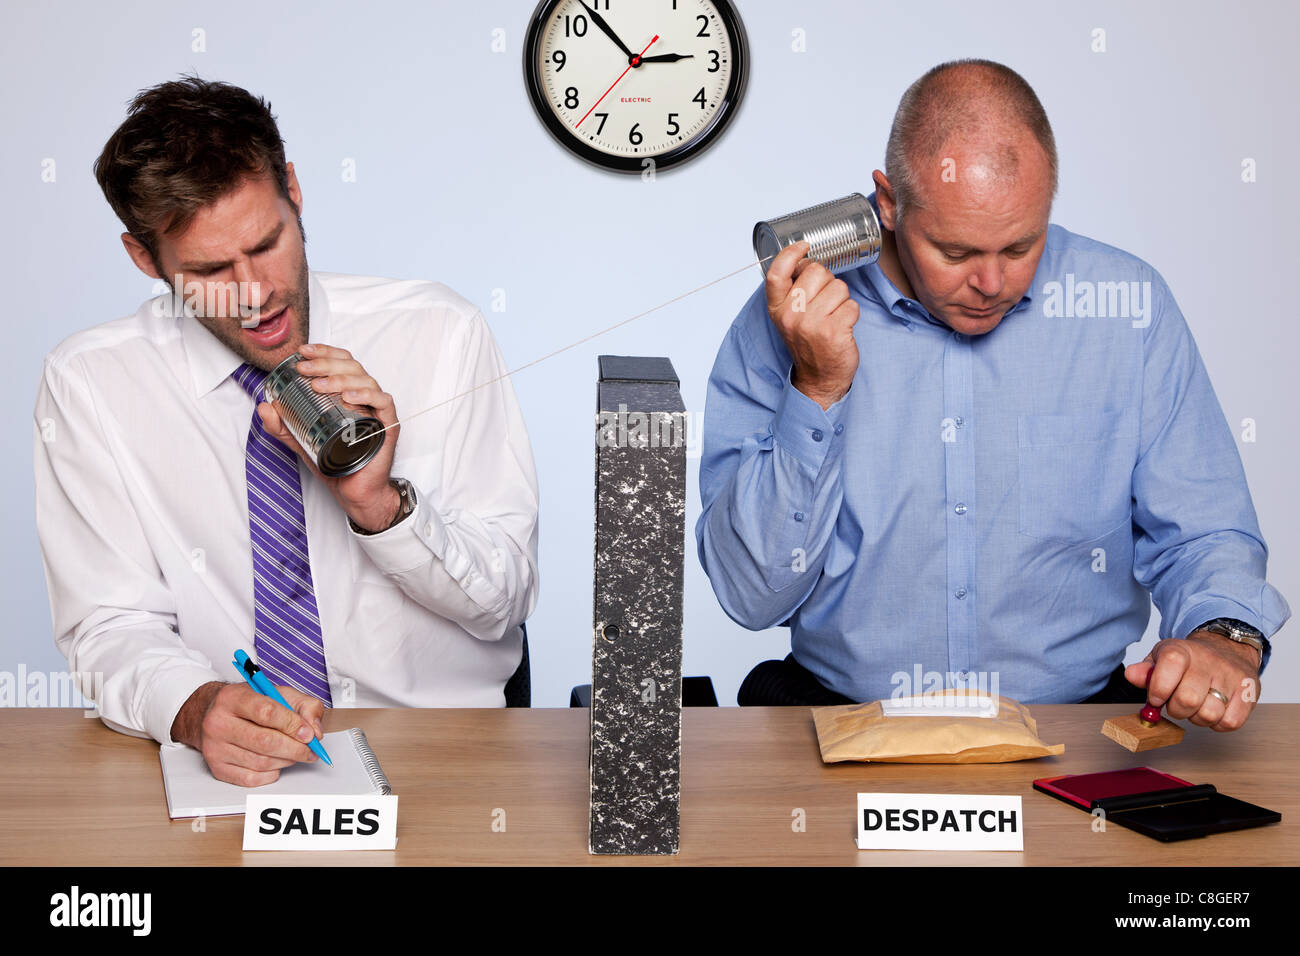 Divertido foto mostrando la realidad detrás de las escenas de los departamentos de ventas y despacho para pequeñas empresas. Foto de stock